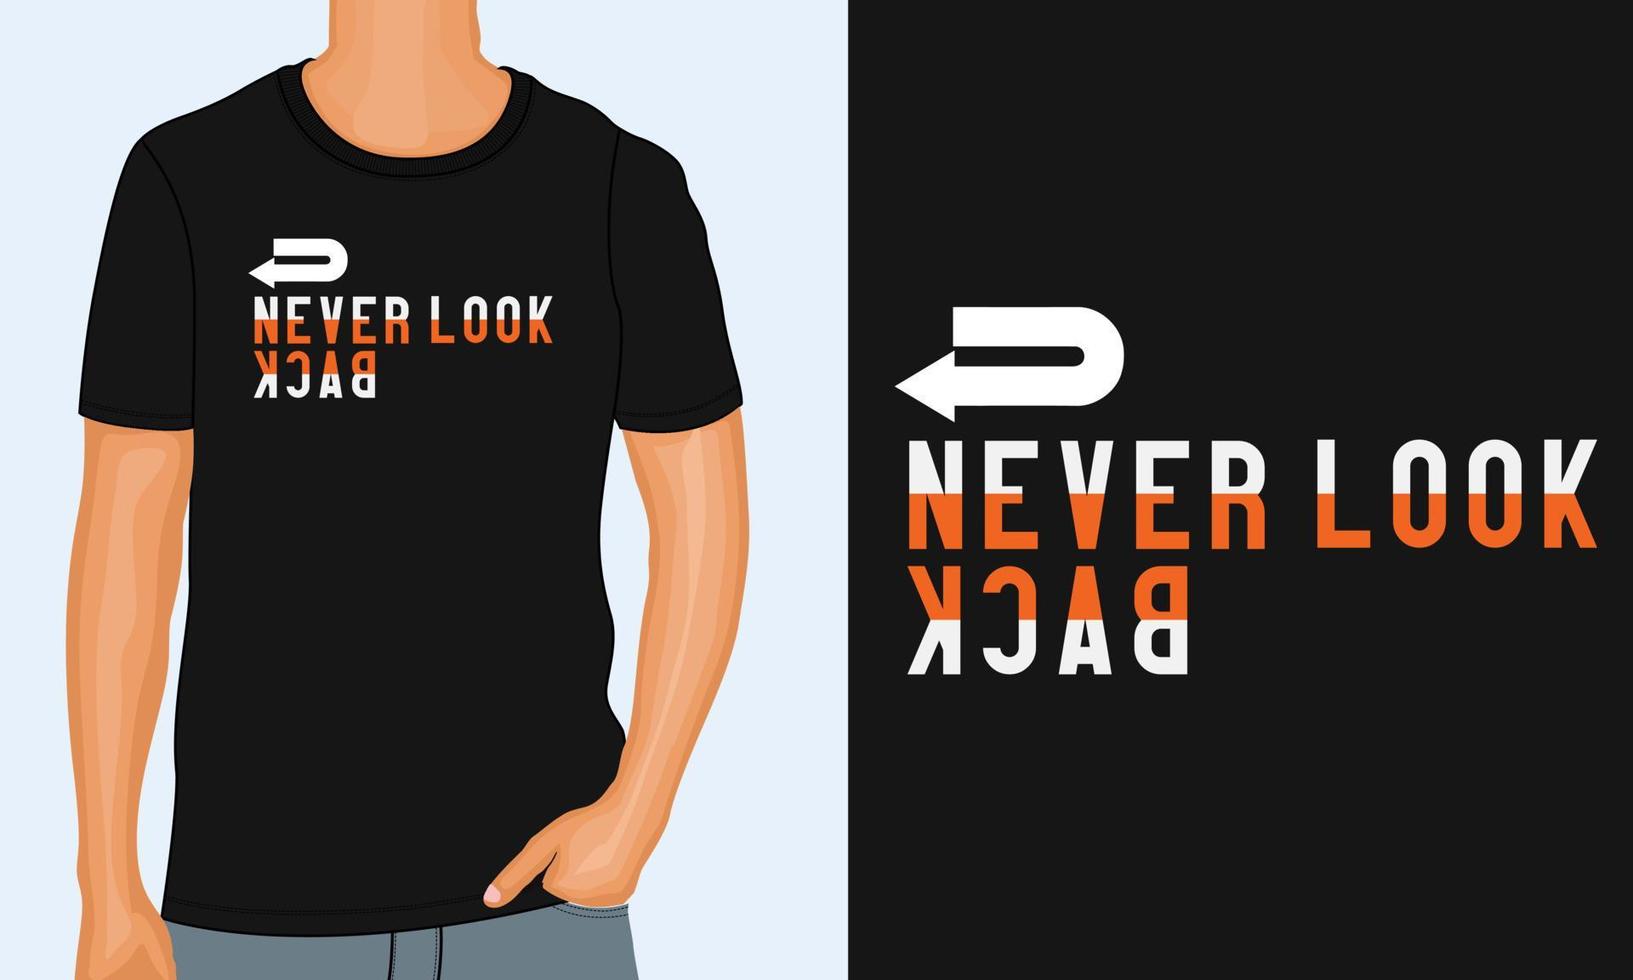 schau nie zurück typografie t-shirt druckdesign fertig zum drucken vektor